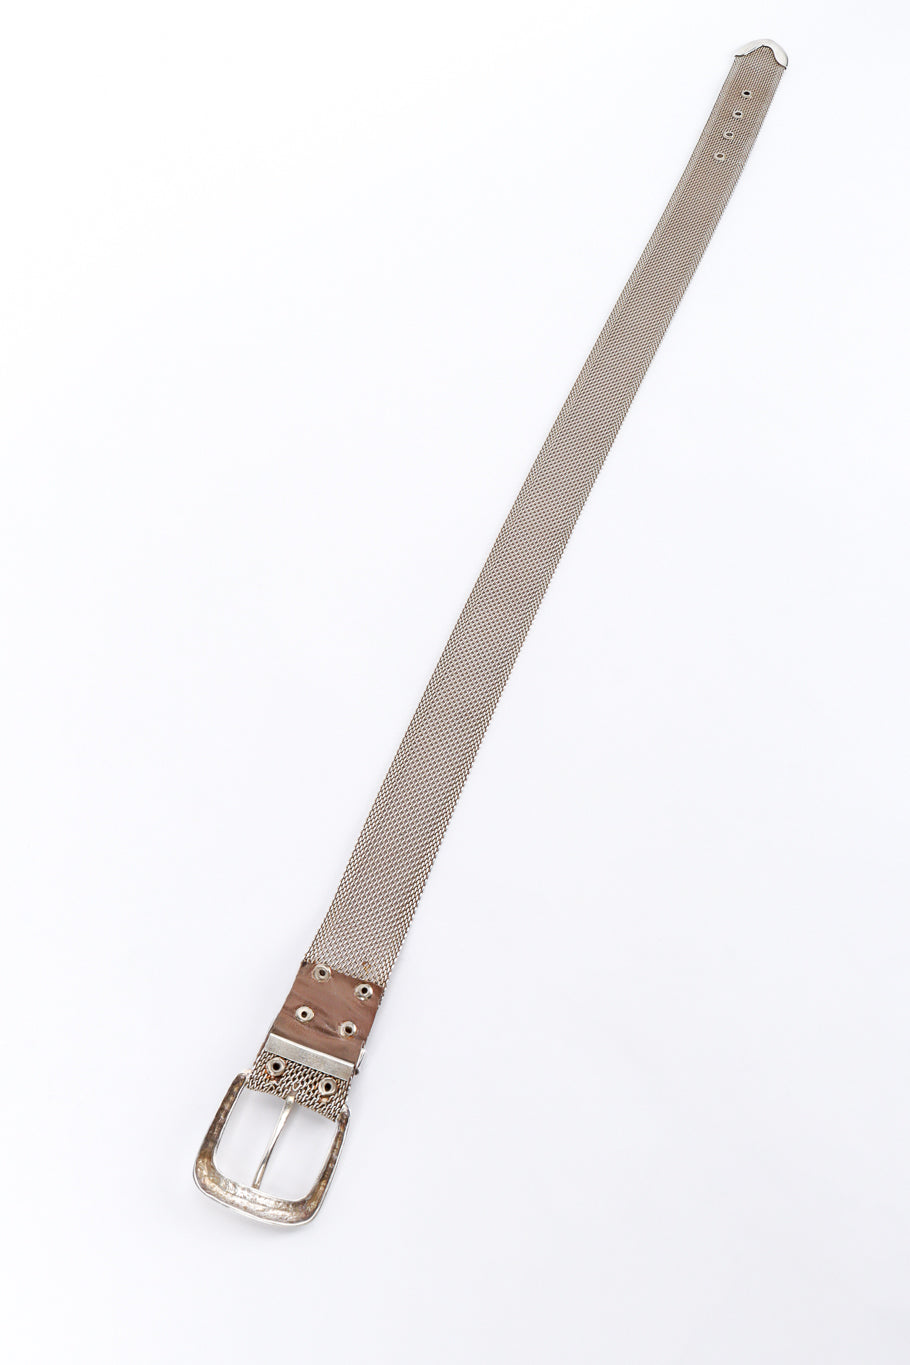 Vintage Ralph Lauren Sterling Mesh Belt back extended @recess la